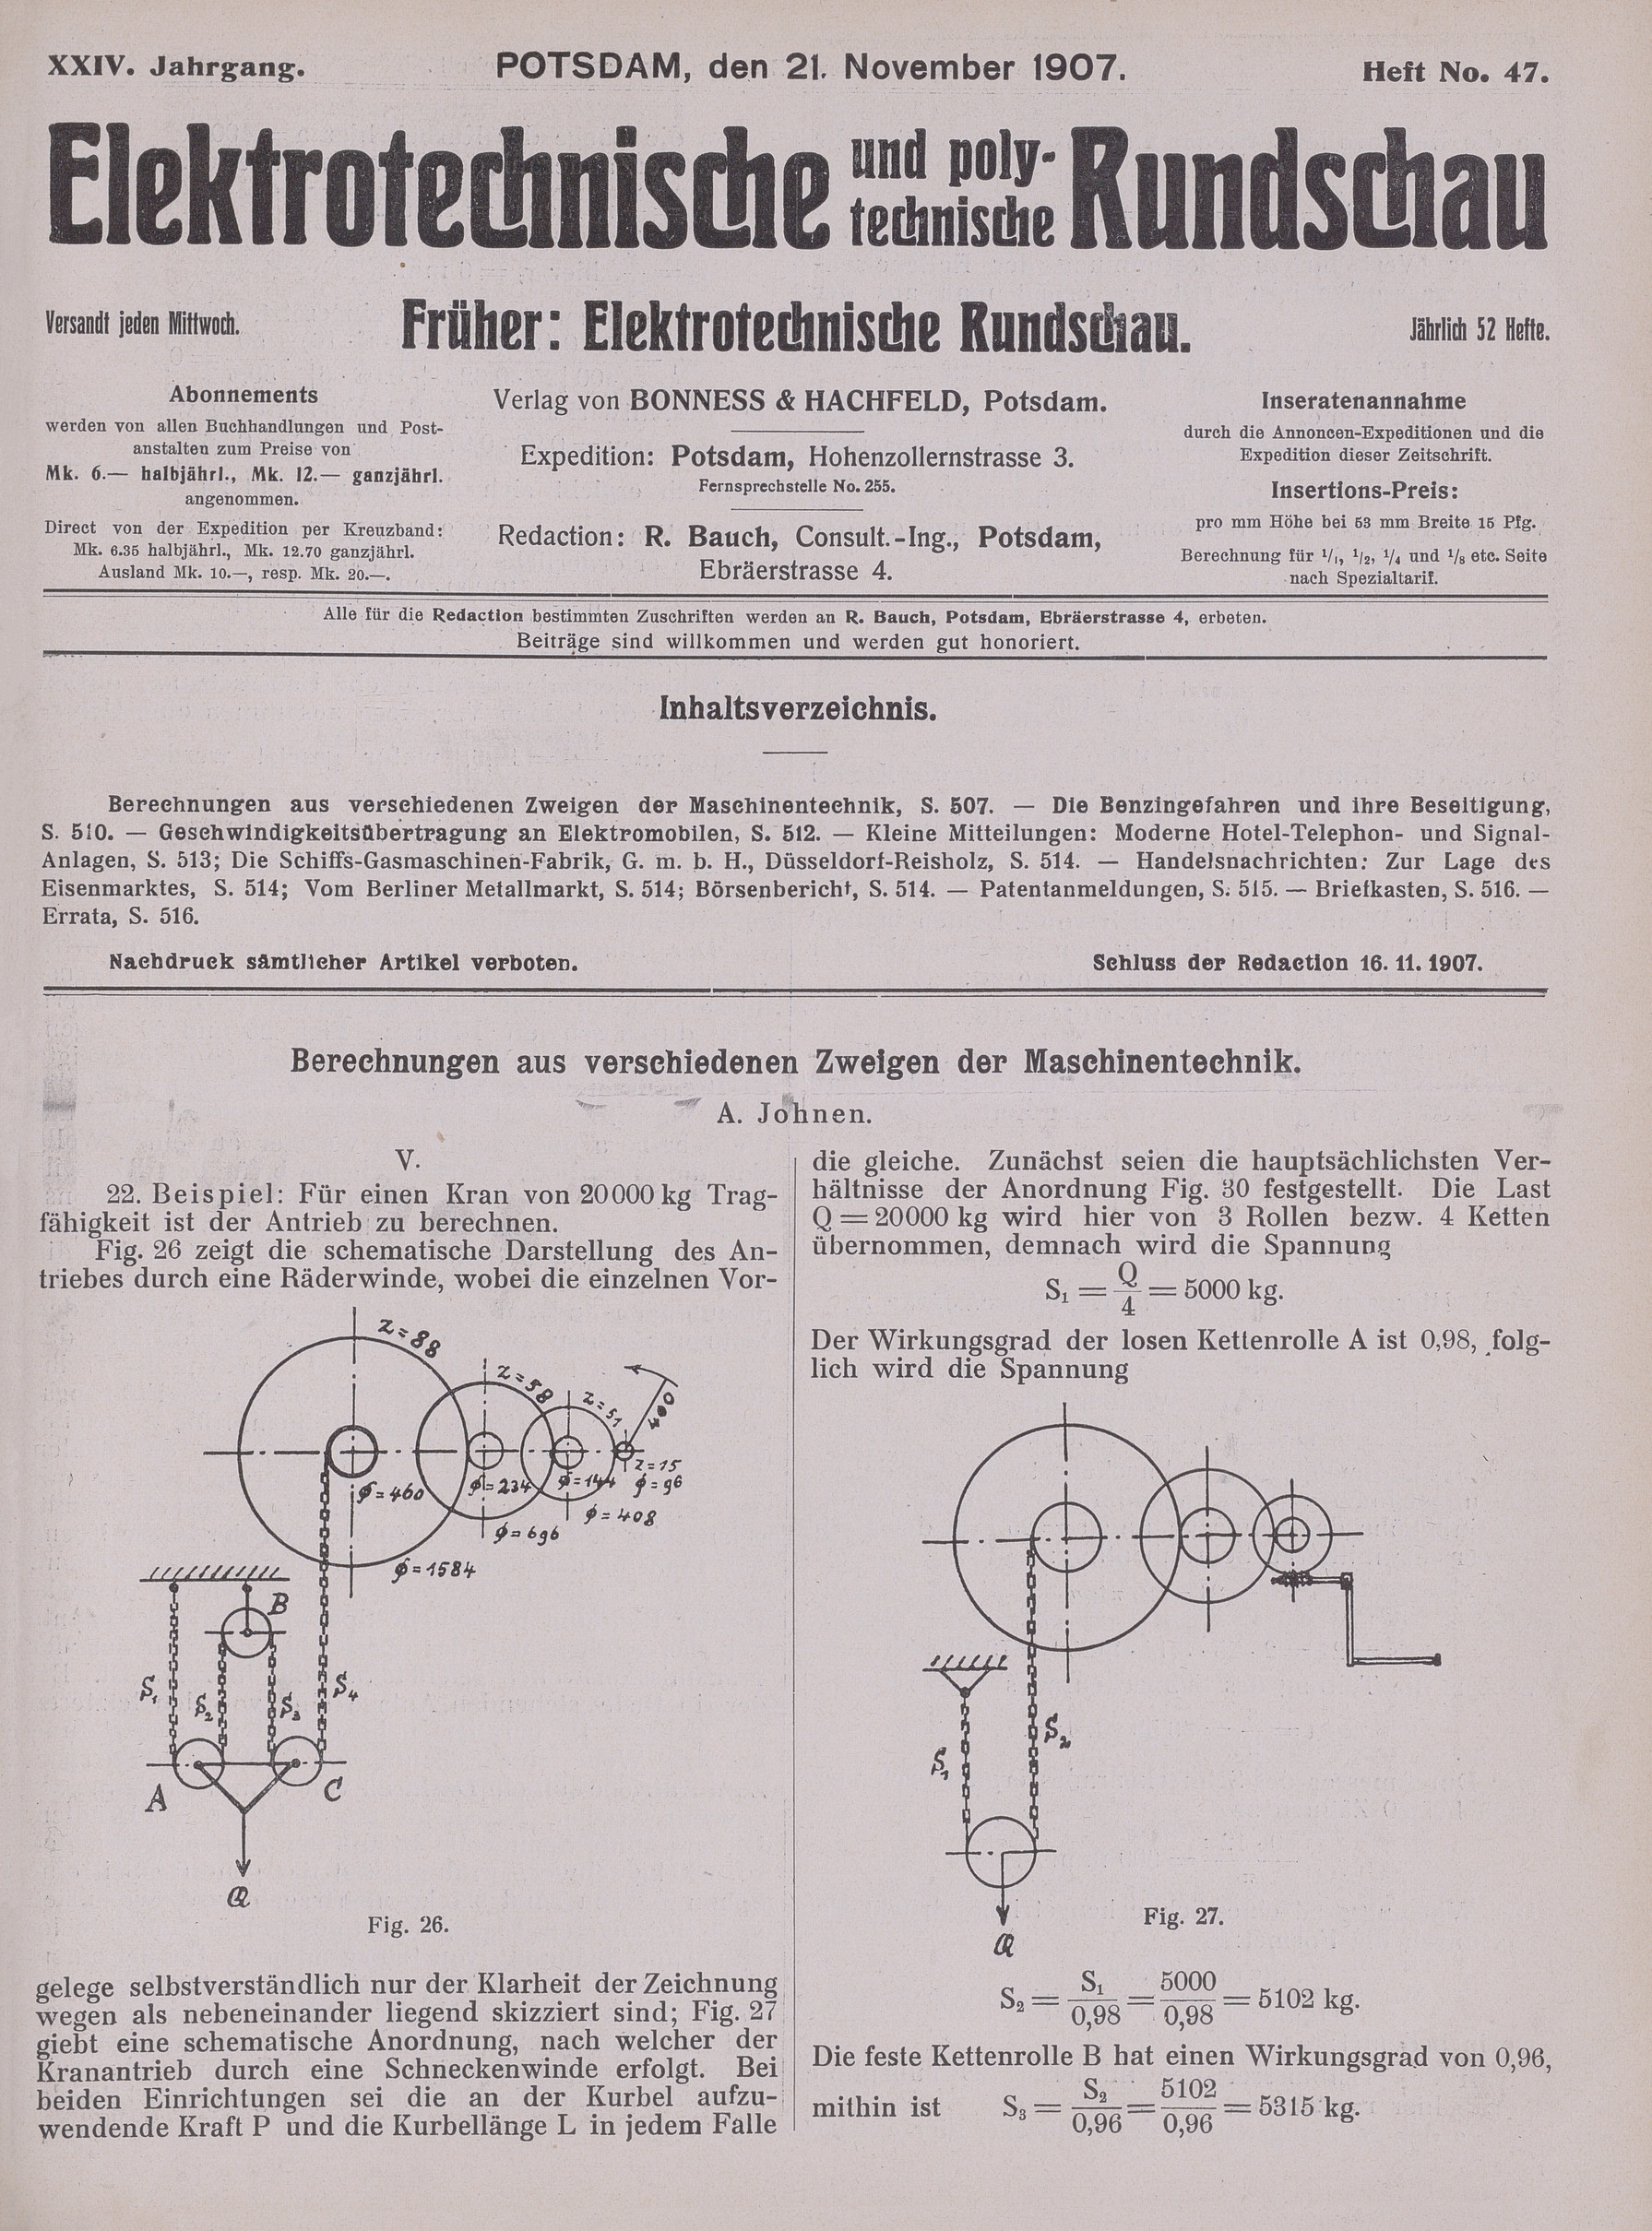 Elektrotechnische und polytechnische Rundschau, XXIV. Jahrgang, Heft No. 47